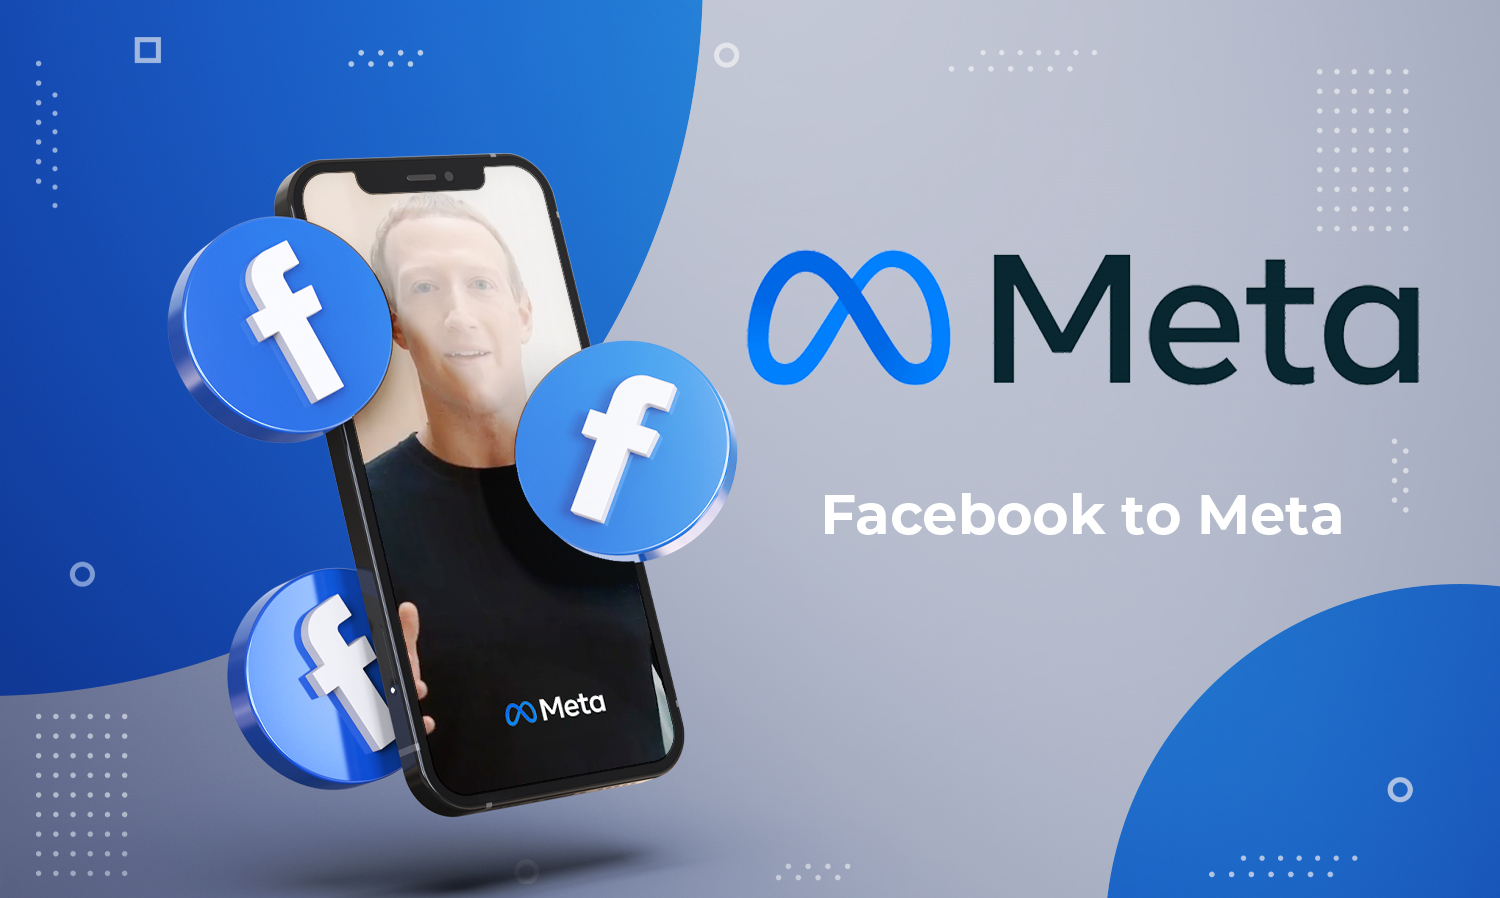 การเปลี่ยนชื่อของ Facebook เป็น Meta นั้นถือว่าเป็นการเปิดฉากยุคใหม่ของ social media